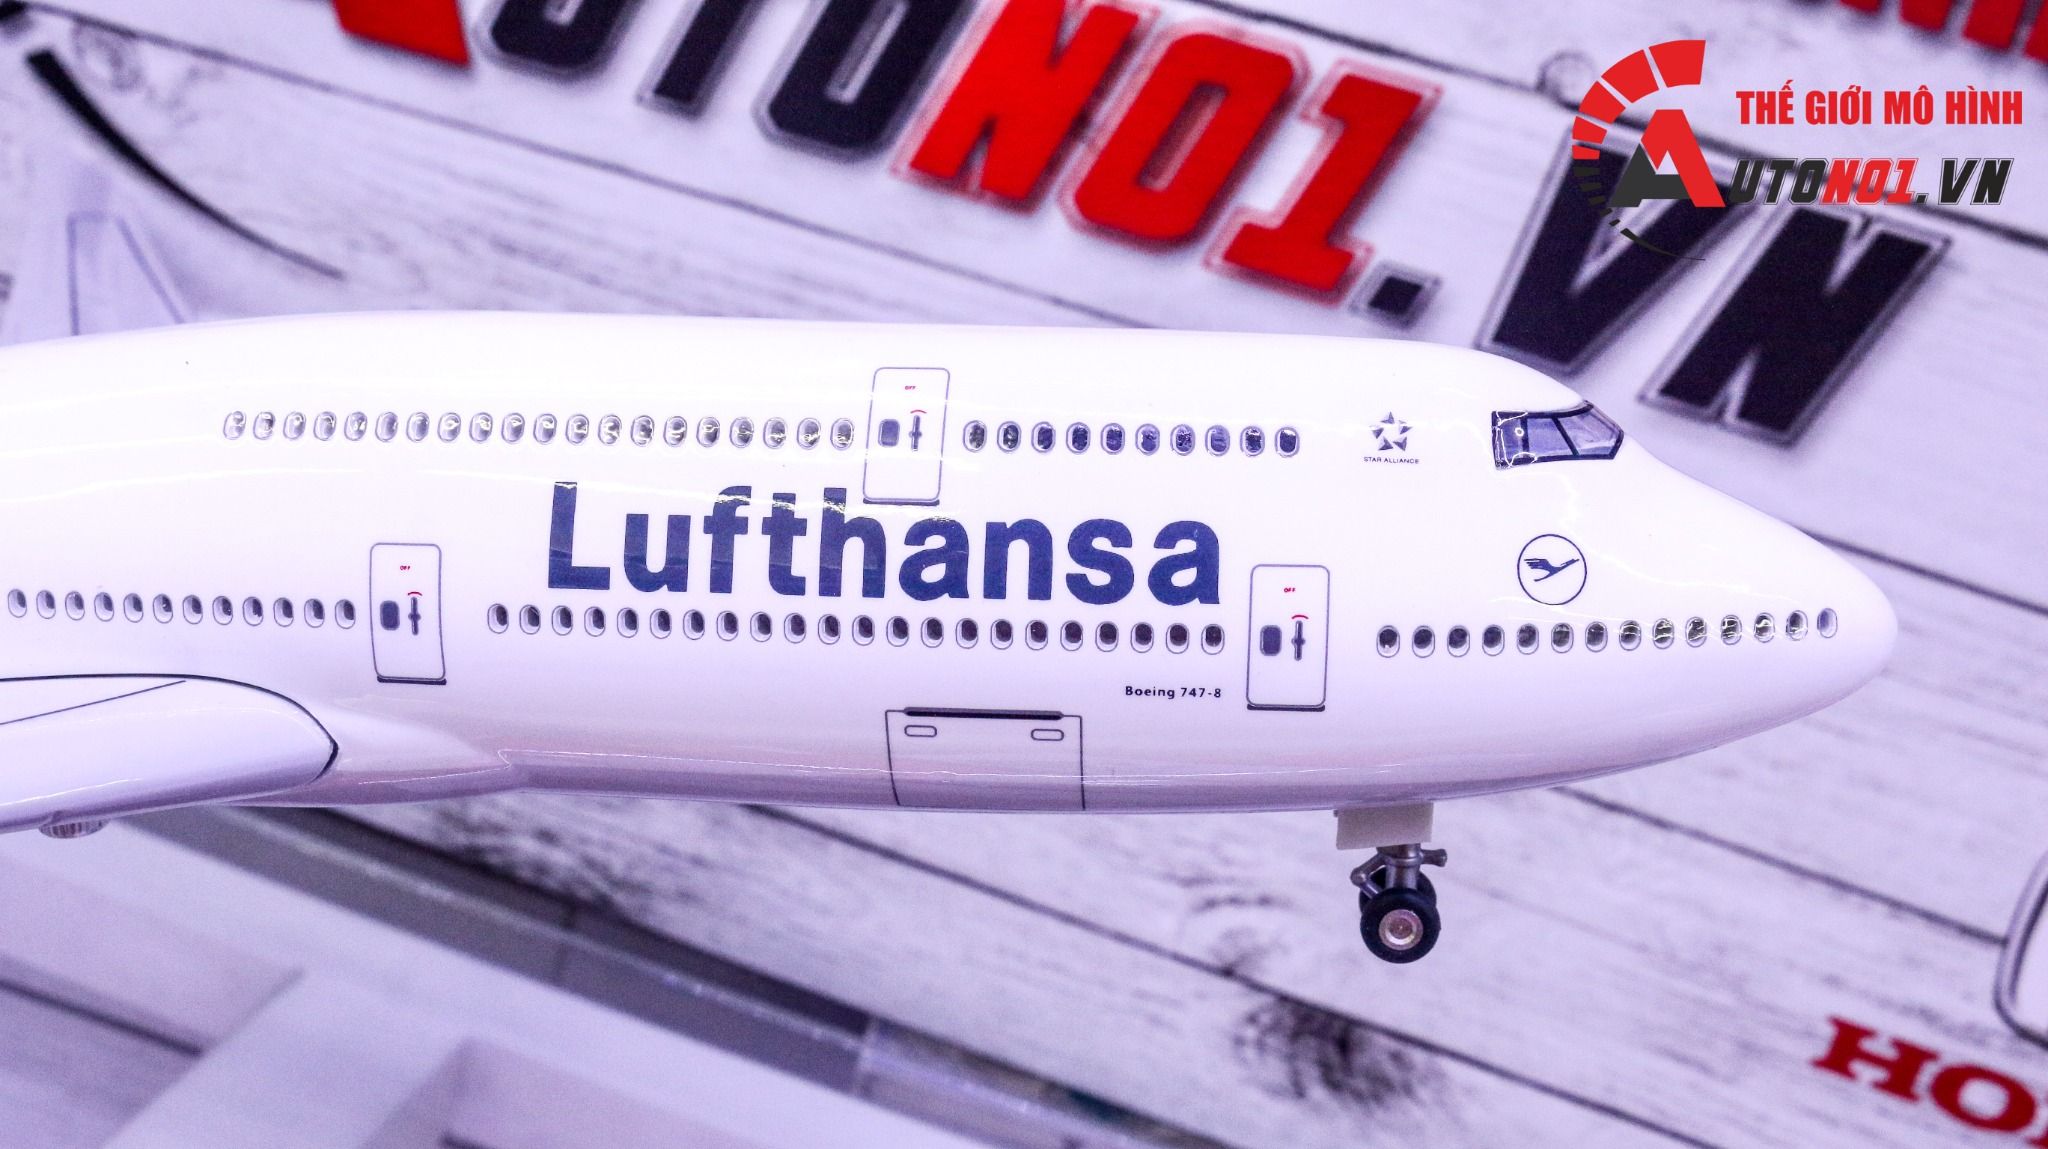  Mô hình máy bay Deutsche Lufthansa Boeing B747-8 Germany - Đức 47cm 1:160 có đèn led tự động theo tiếng vỗ tay hoặc chạm MB47011 